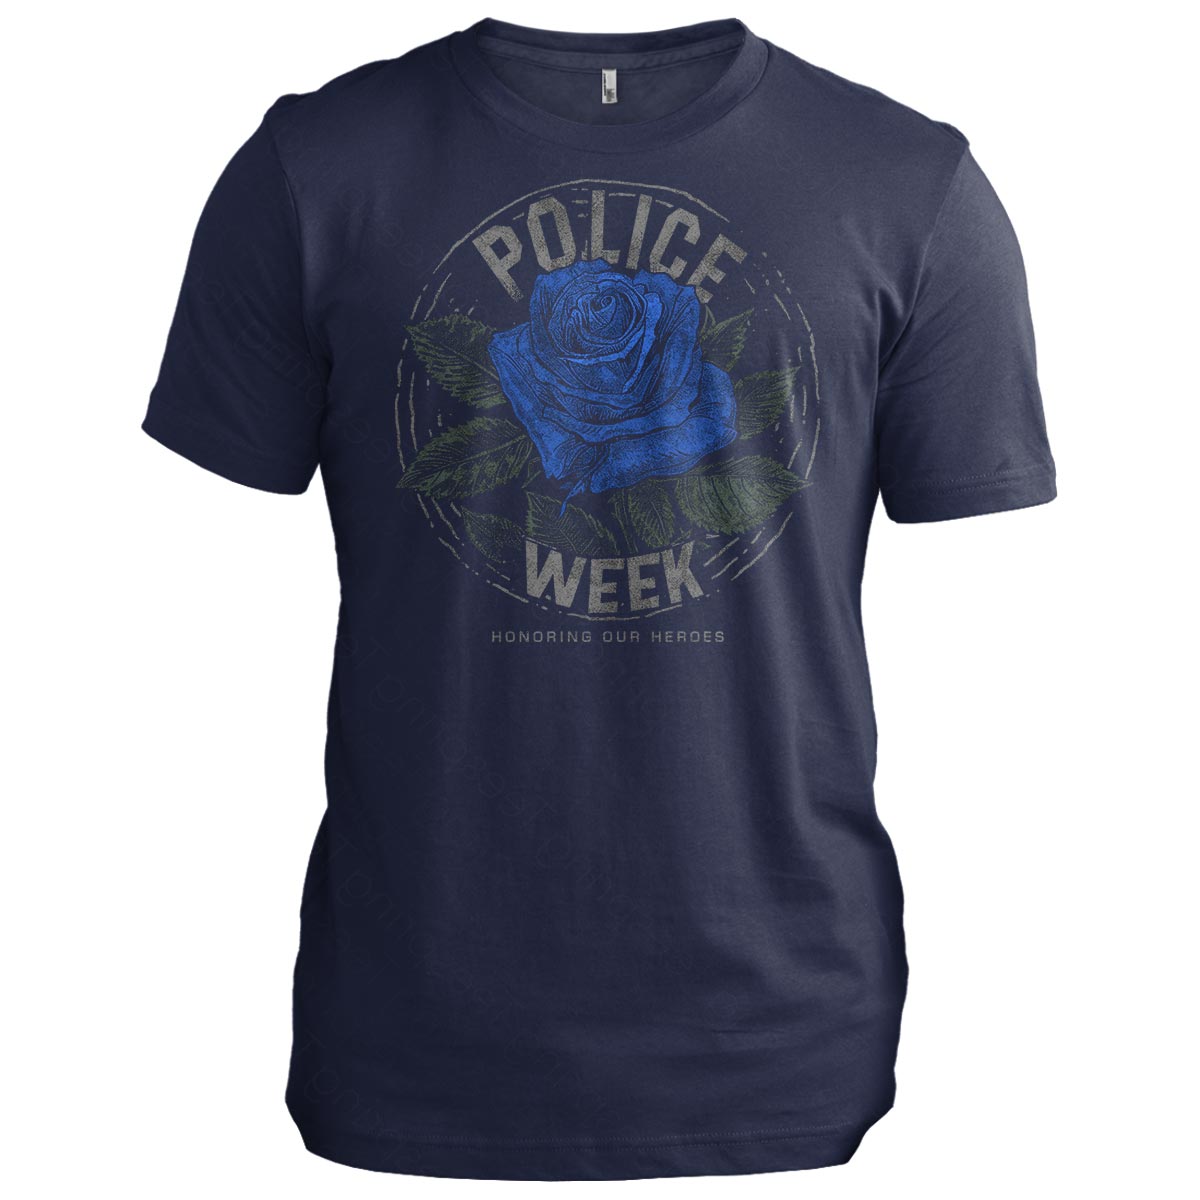 Police Week: Honoring Our Heroes